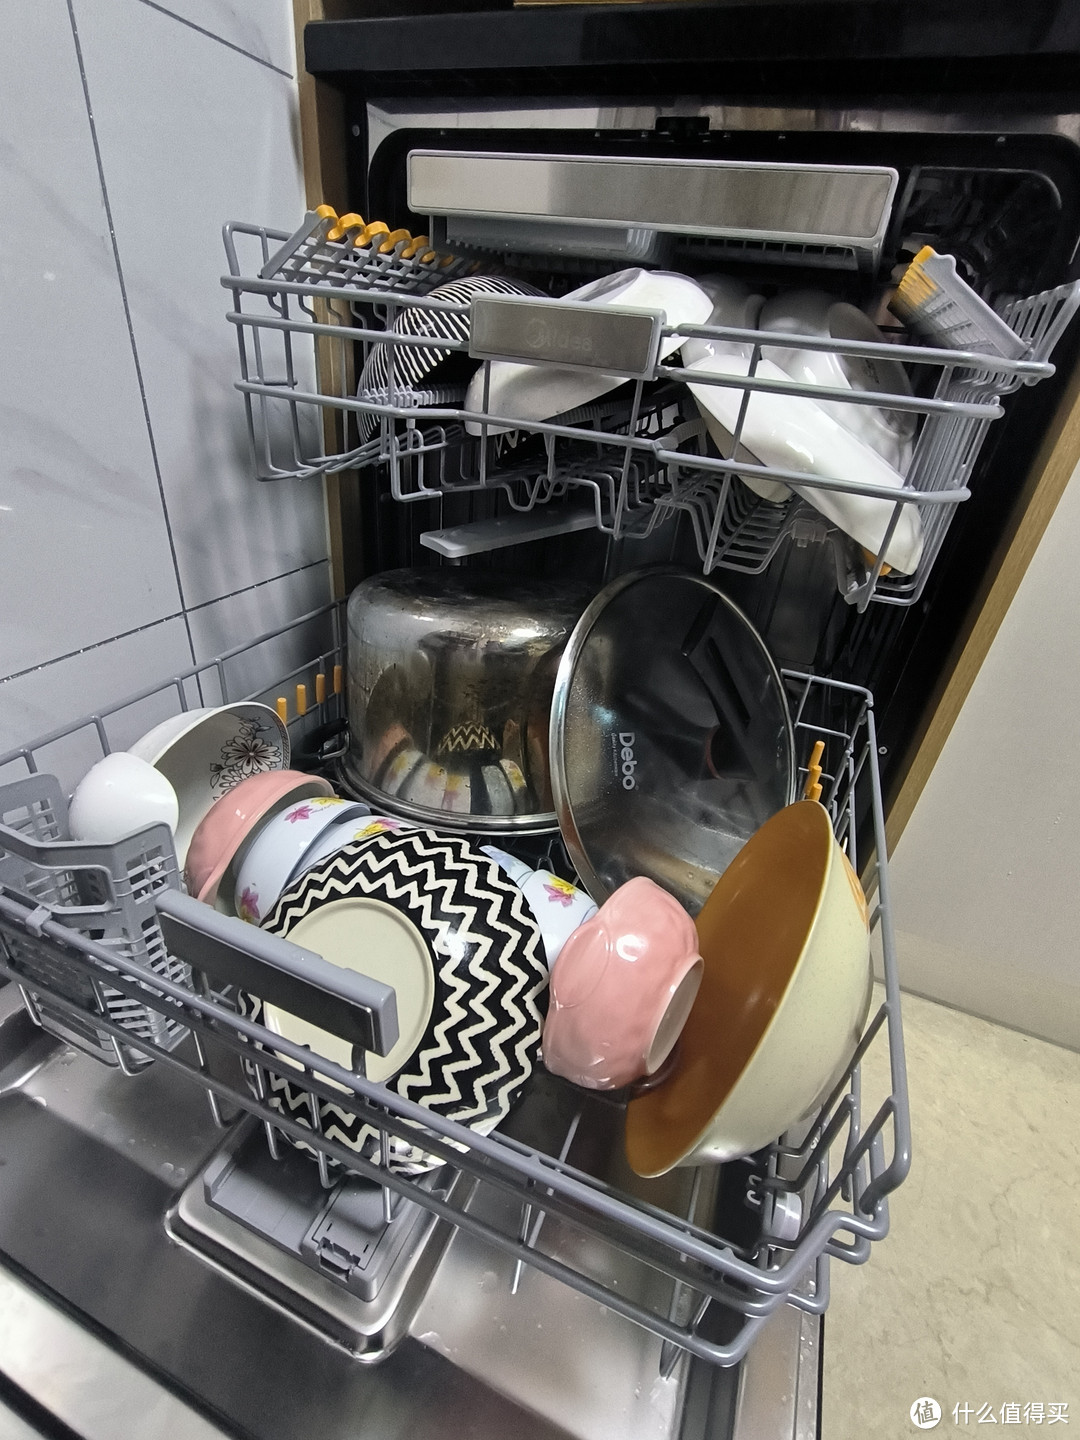 该不该买洗碗机？洗碗机到底是不是鸡肋？这里给你答案